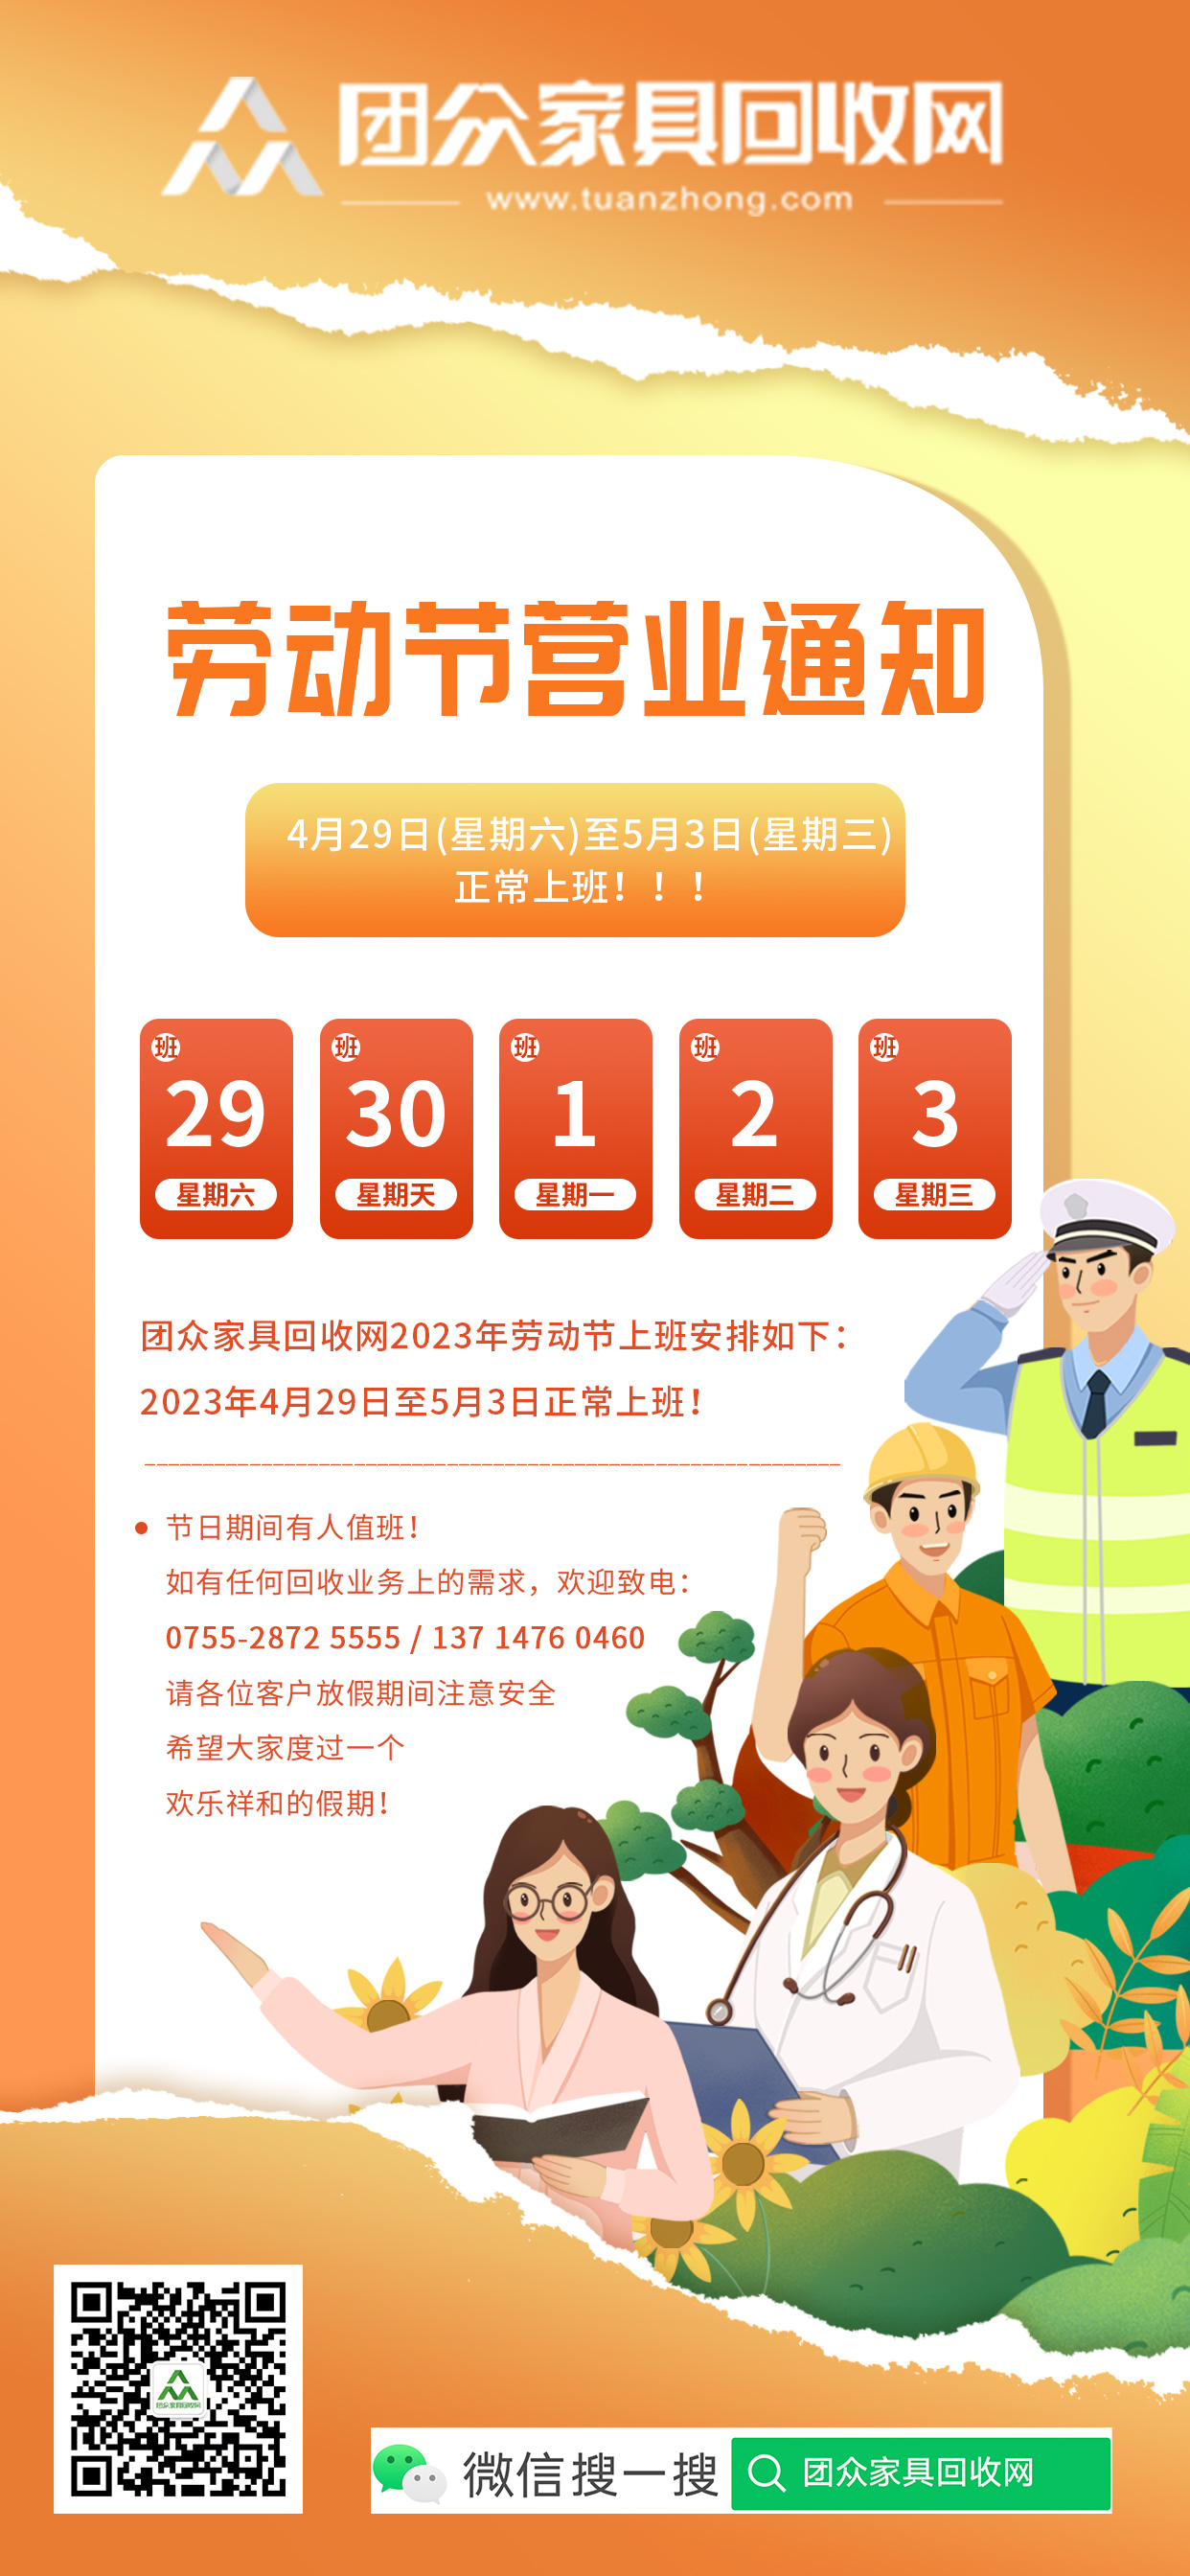 【通知】团众家具回收网2023年劳动节上班安排